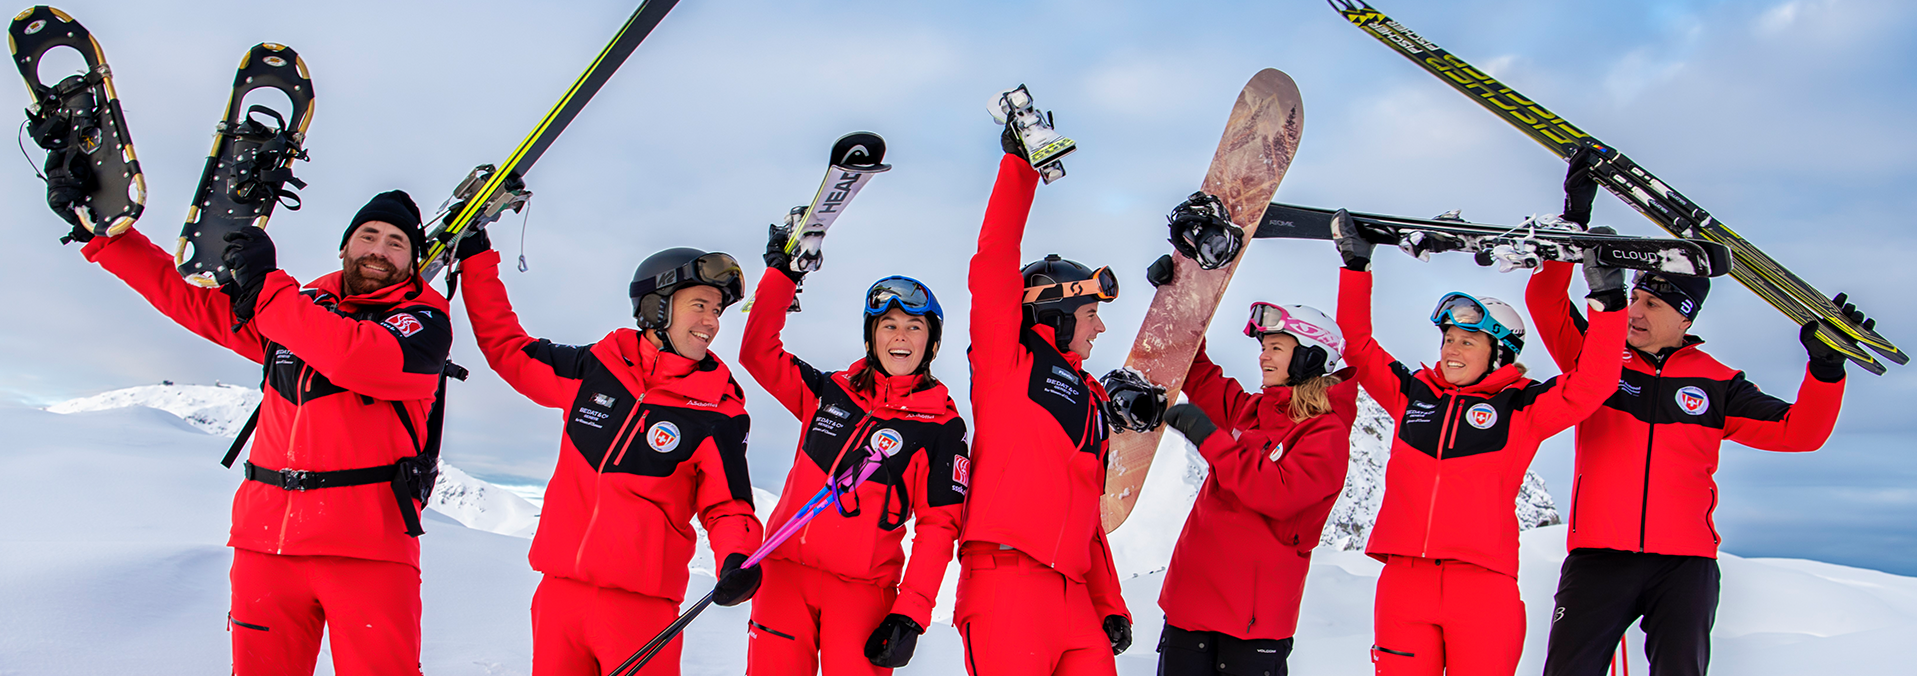 Team der Skischule Klosters auf der Piste 